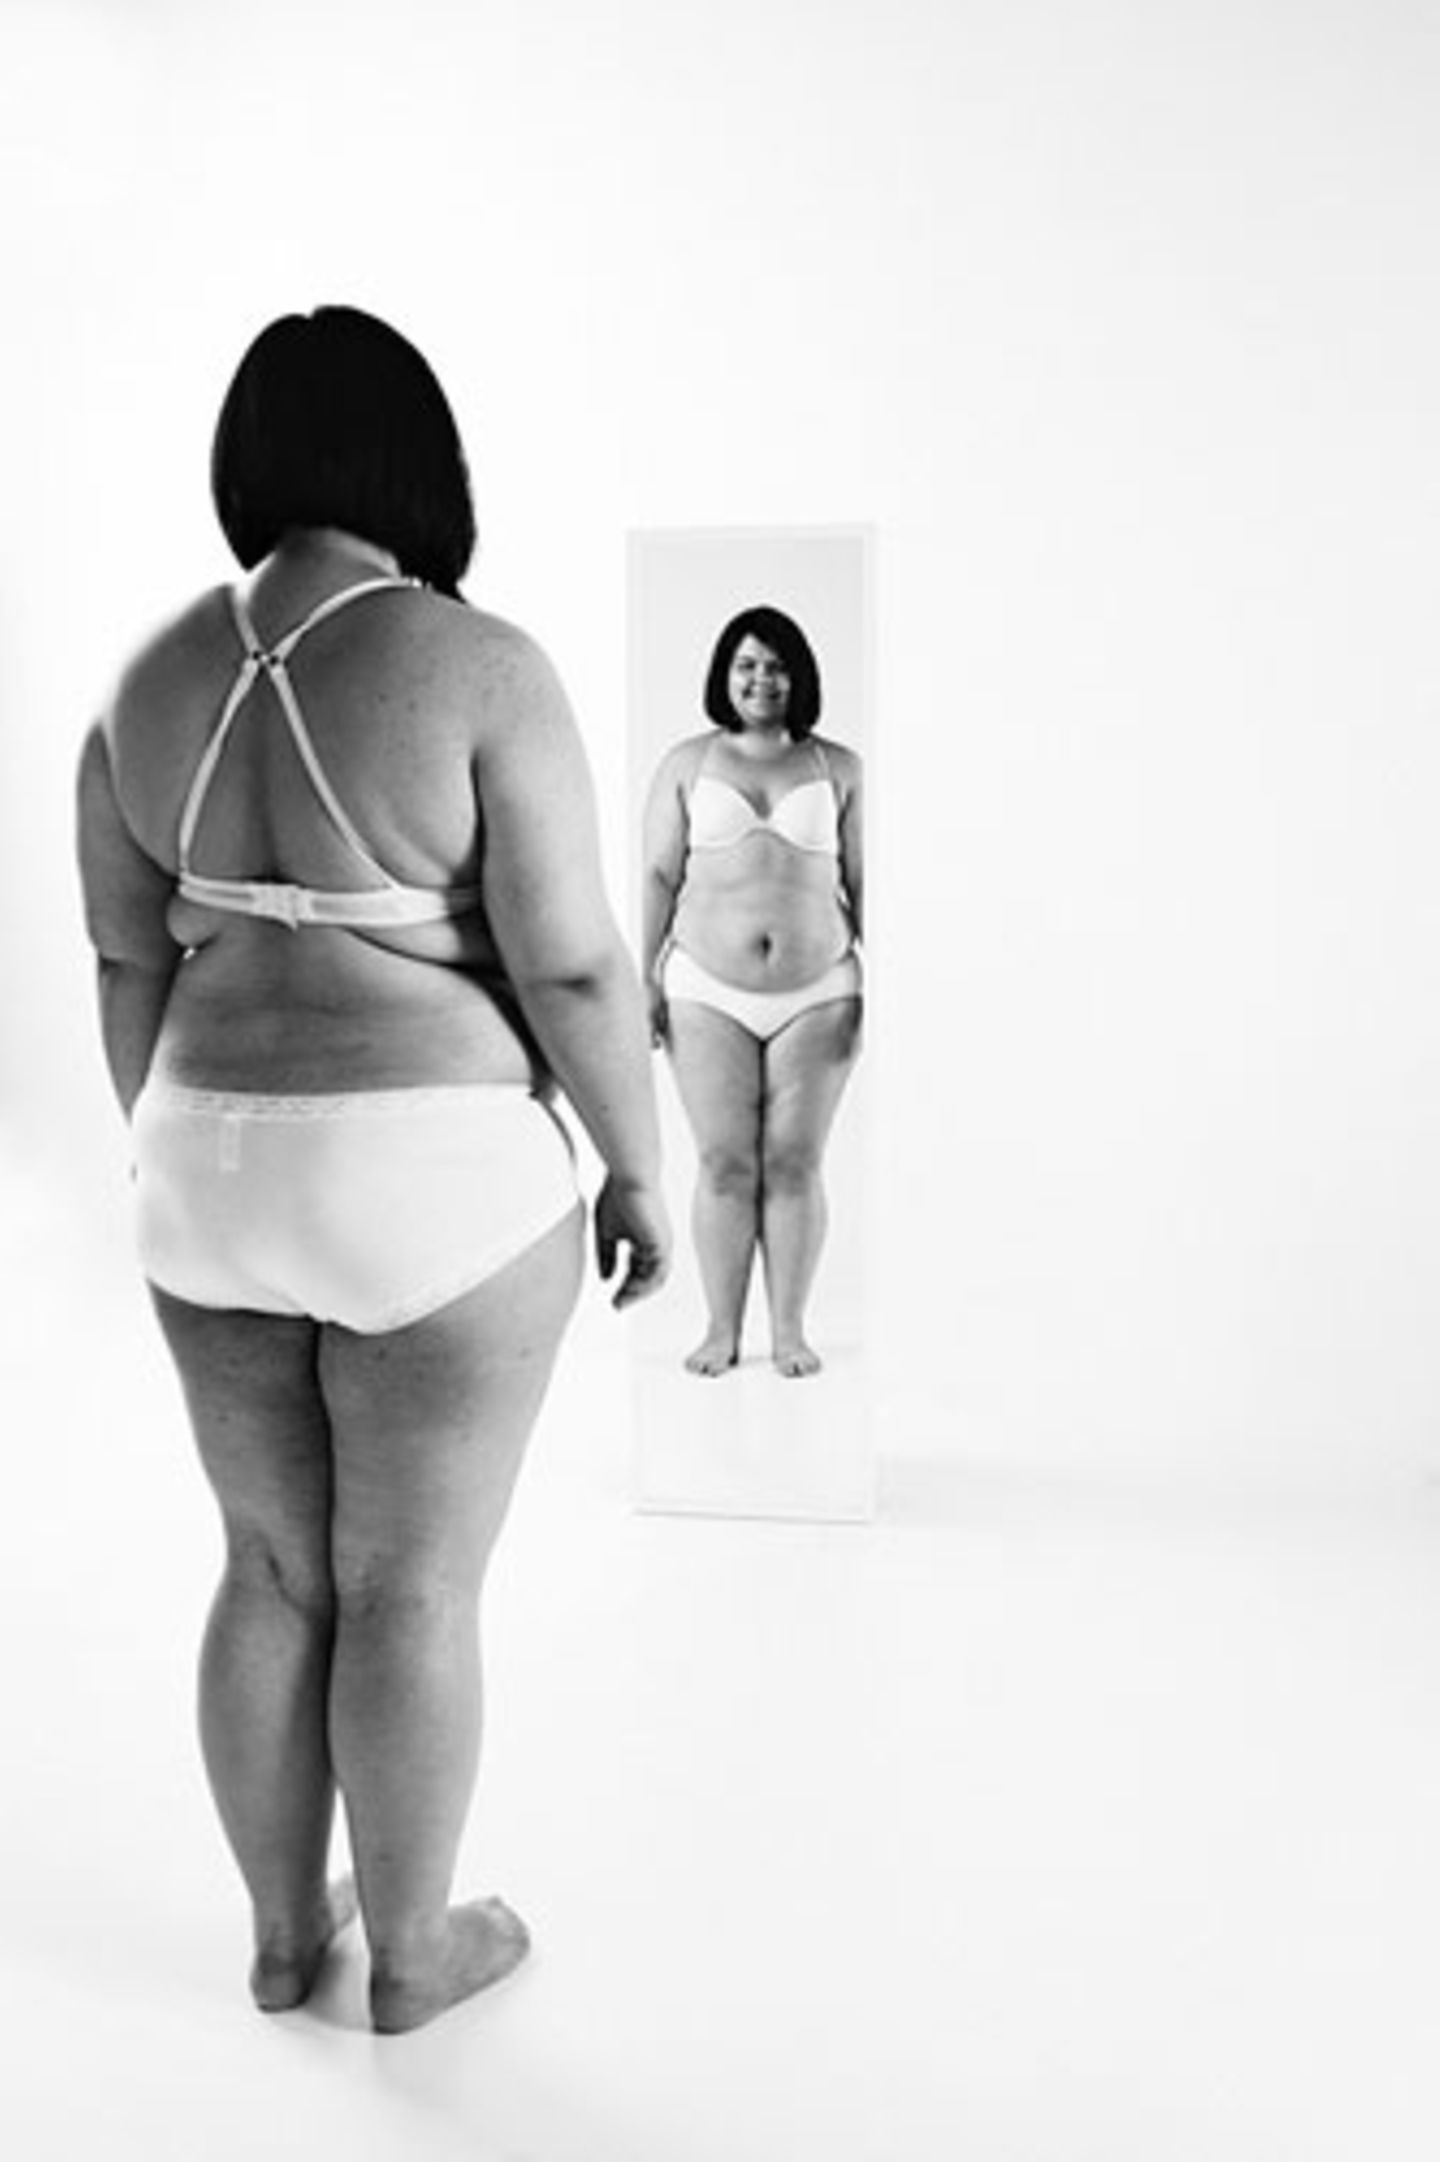 Rekaši?t? bat die Frauen, sich vor einen Spiegel zu stellen und ihren Körper wohlwollend zu betrachten.